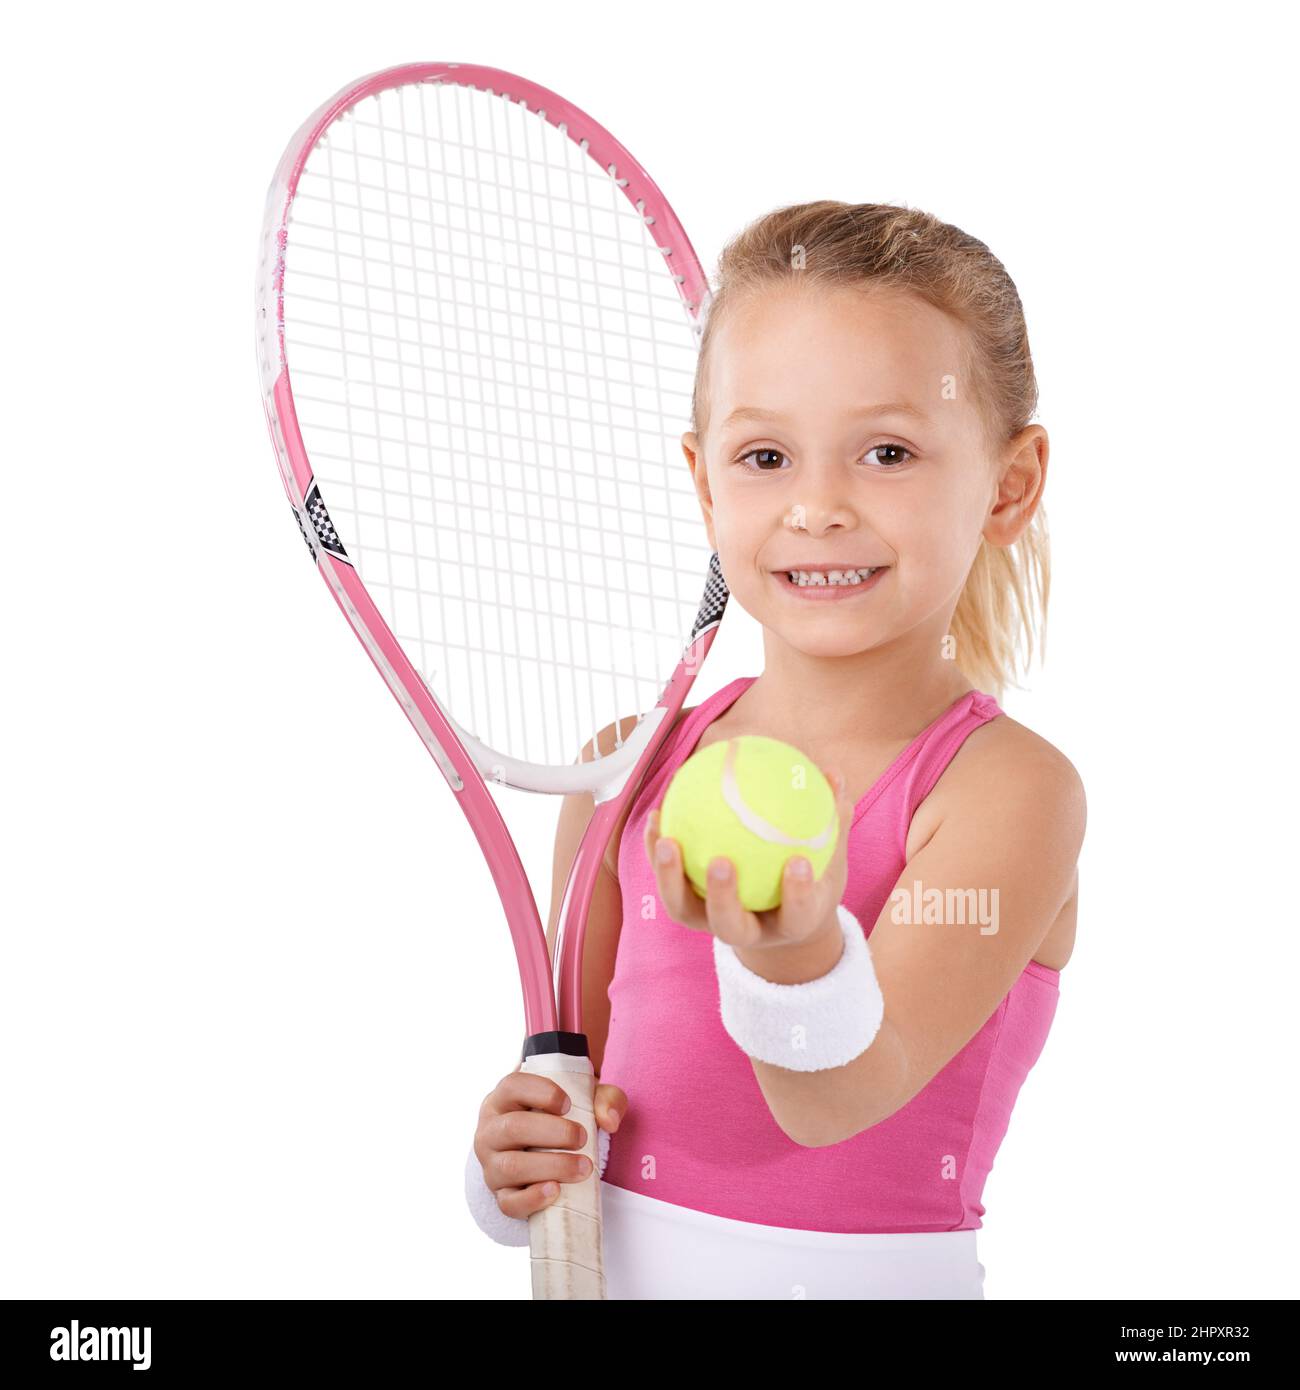 Elle a une passion pour le tennis. Portrait d'une jolie petite fille en  tenue de tennis Photo Stock - Alamy